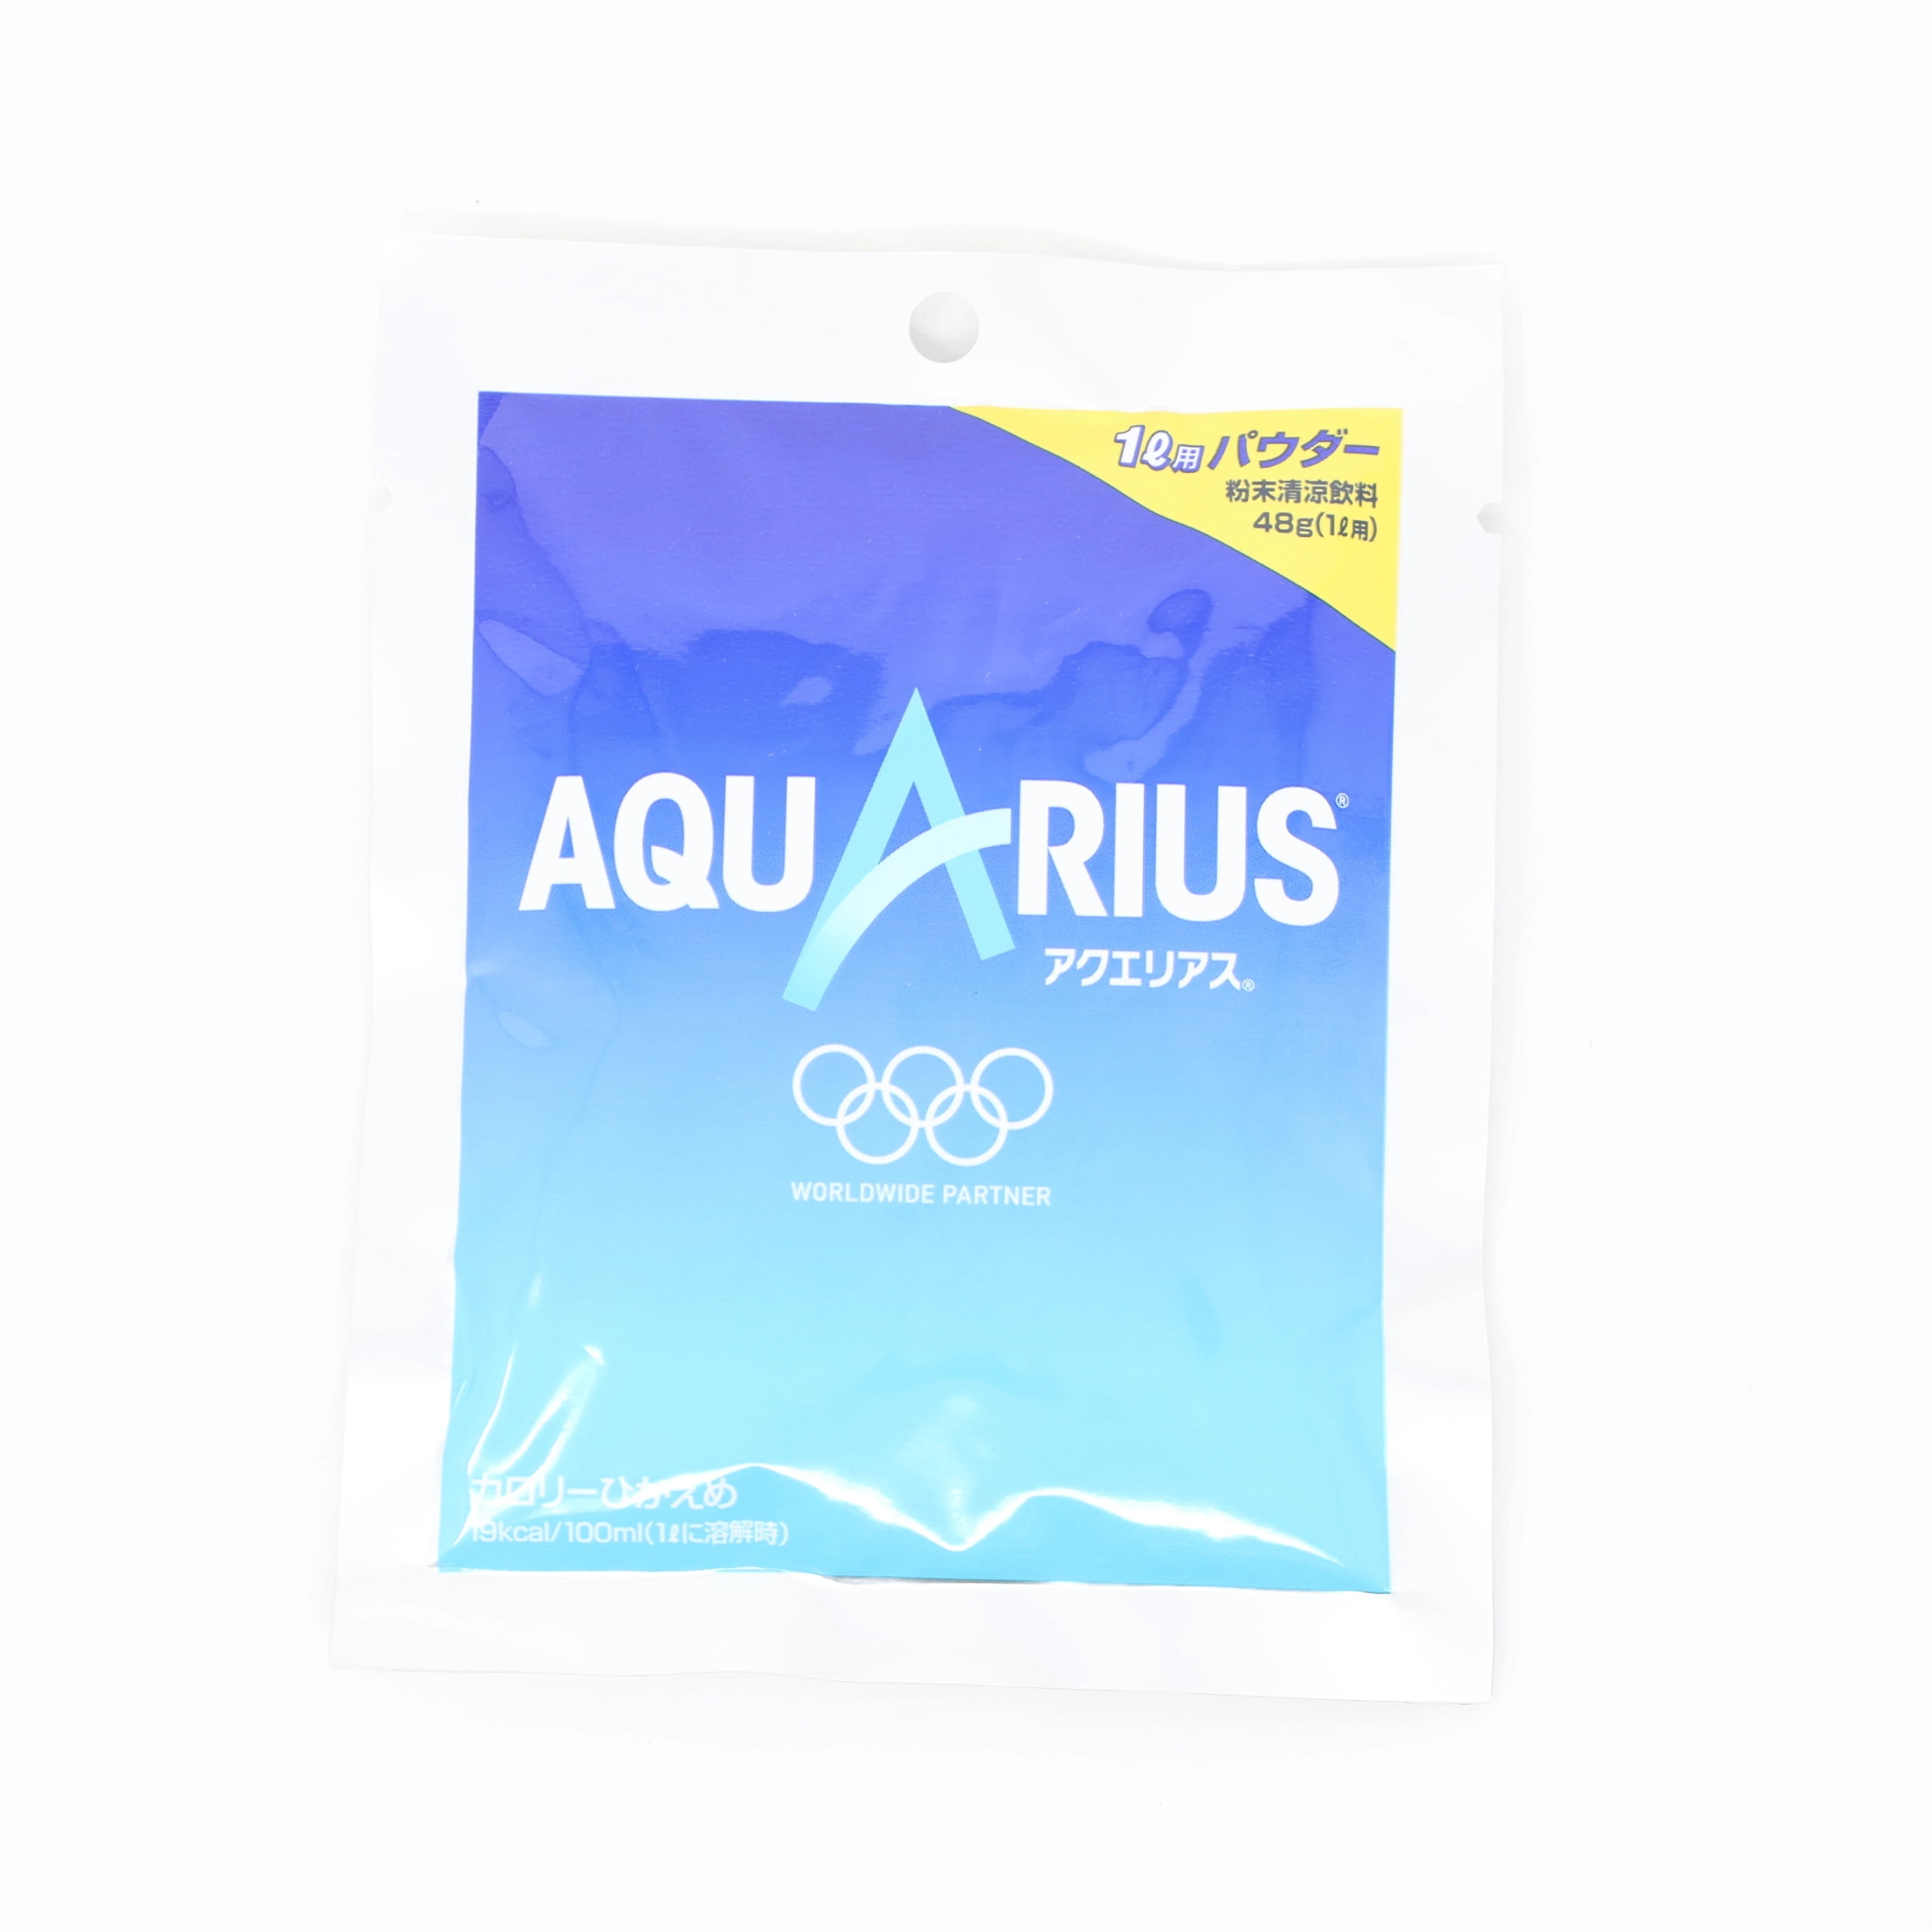 Maak het zwaar Maxim calorie COCA COLA Aquarius Powder 1.6oz/48g - Walmart.com